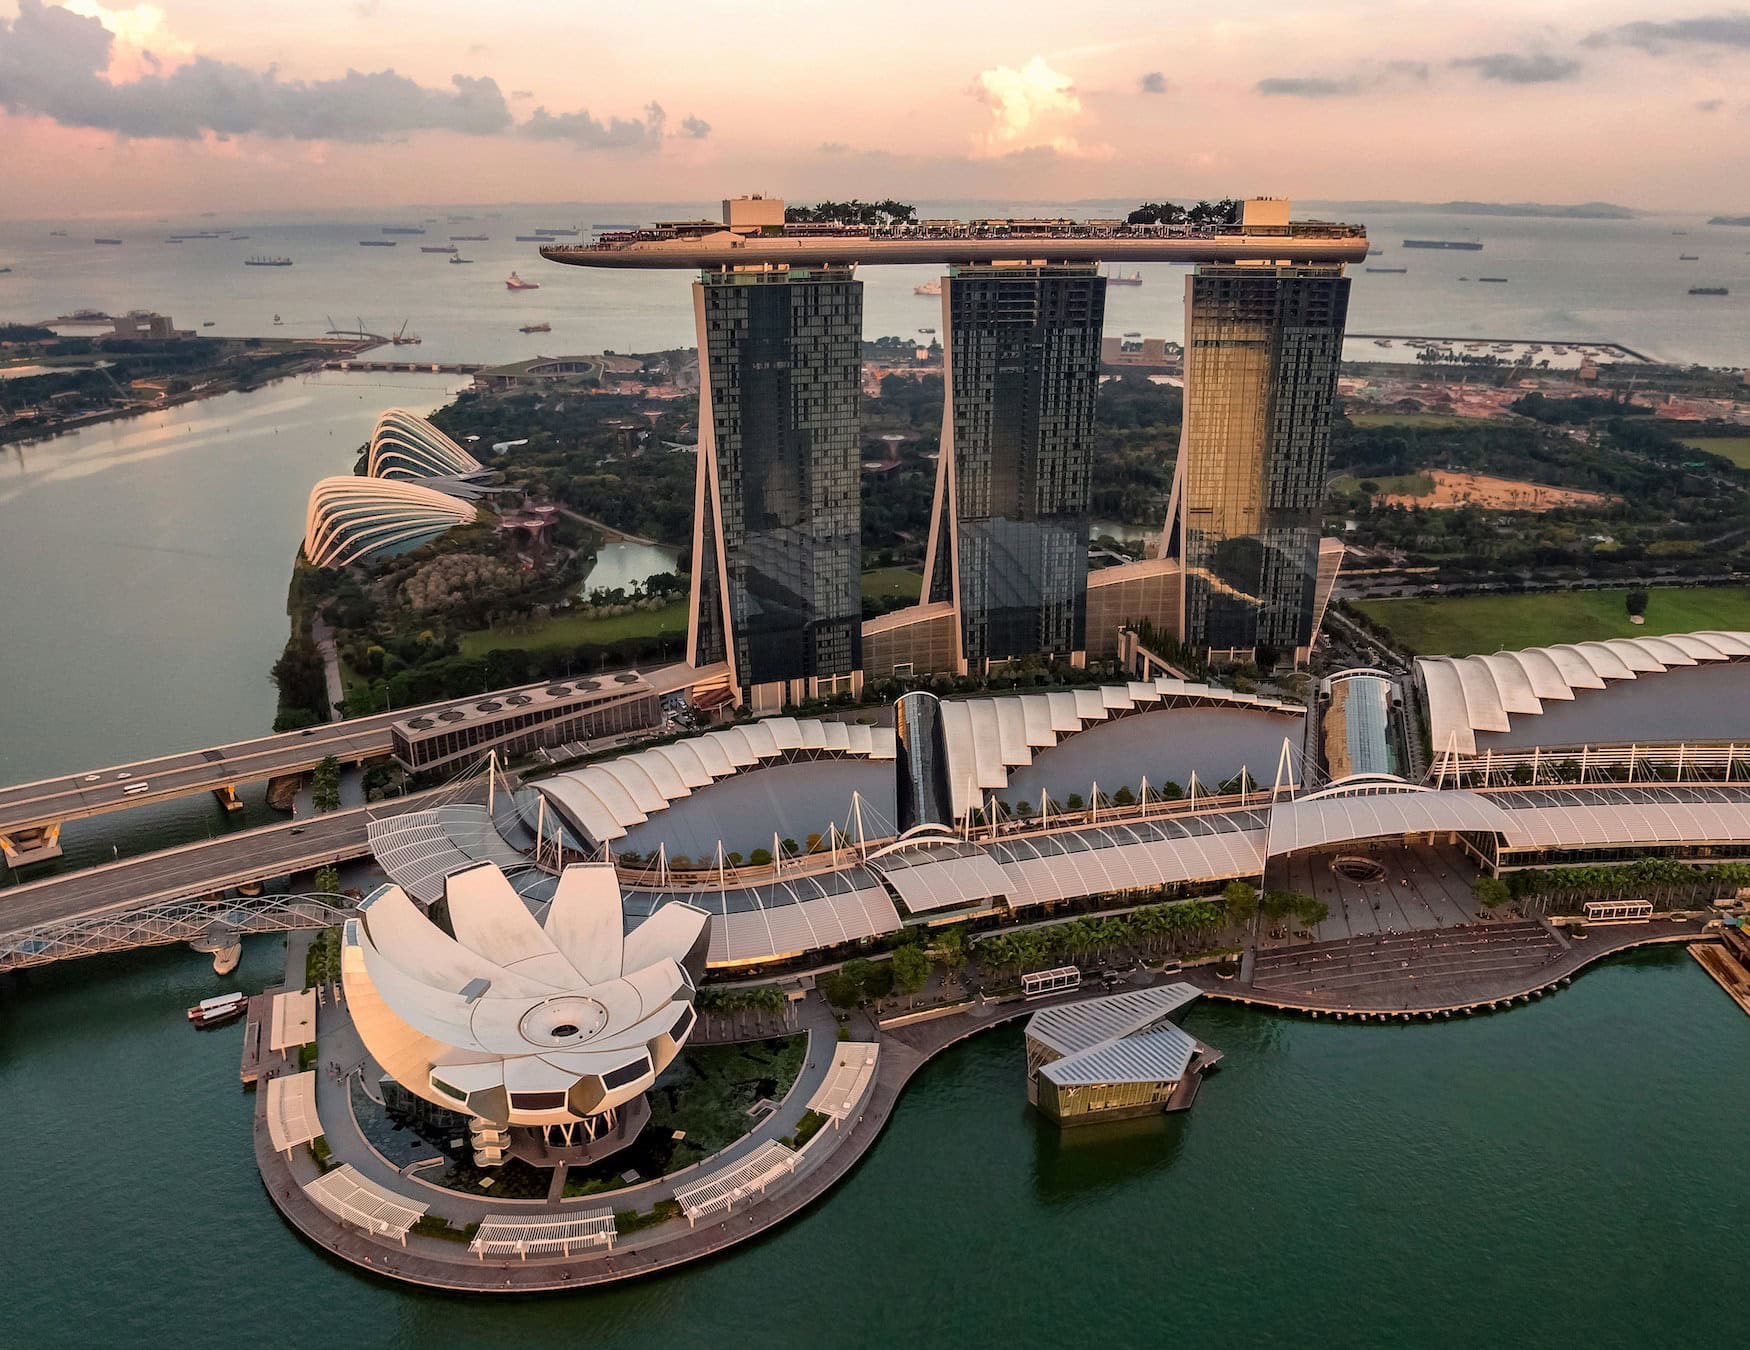 Blick auf Singapur